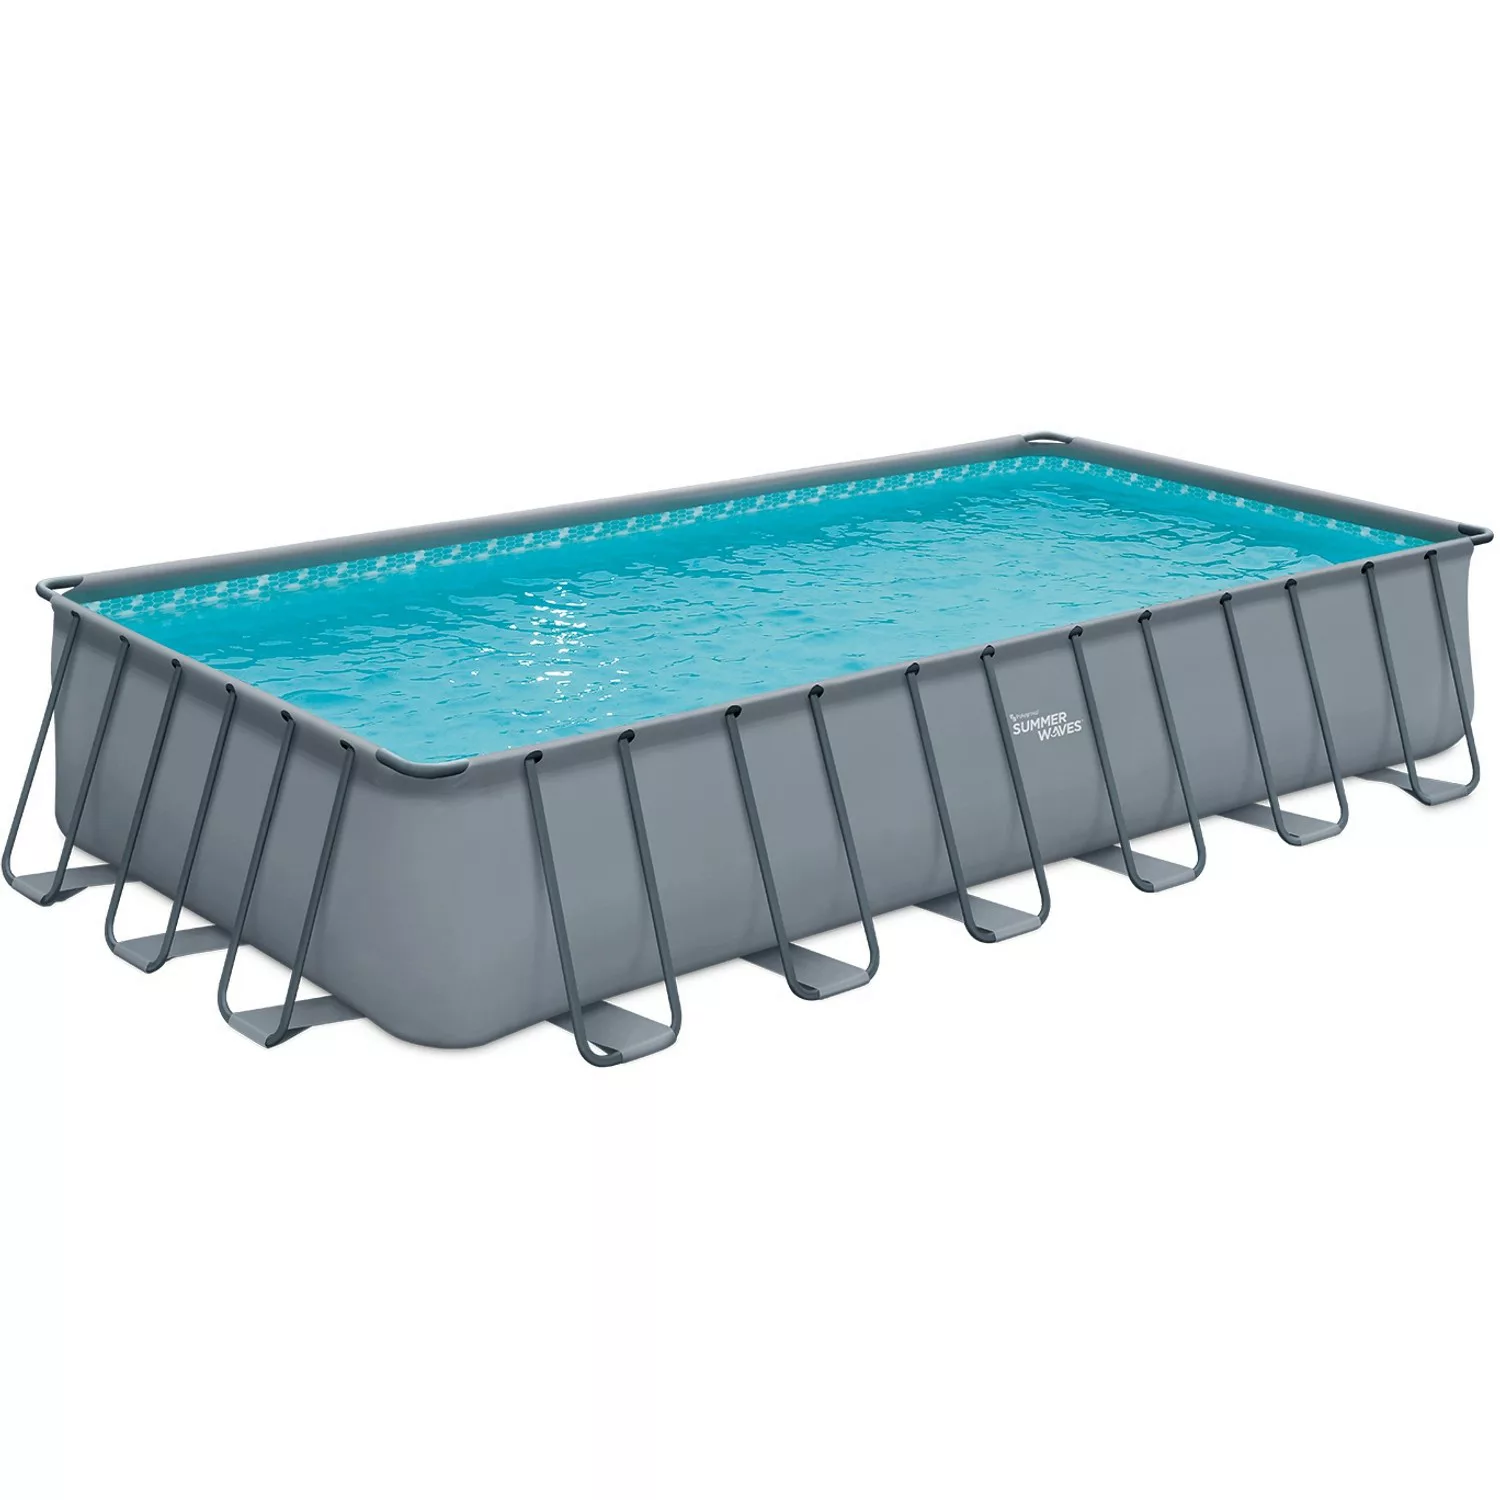 Summer Waves Pool Elite Anthrazit 732 cm x 366 cm x 132 cm günstig online kaufen